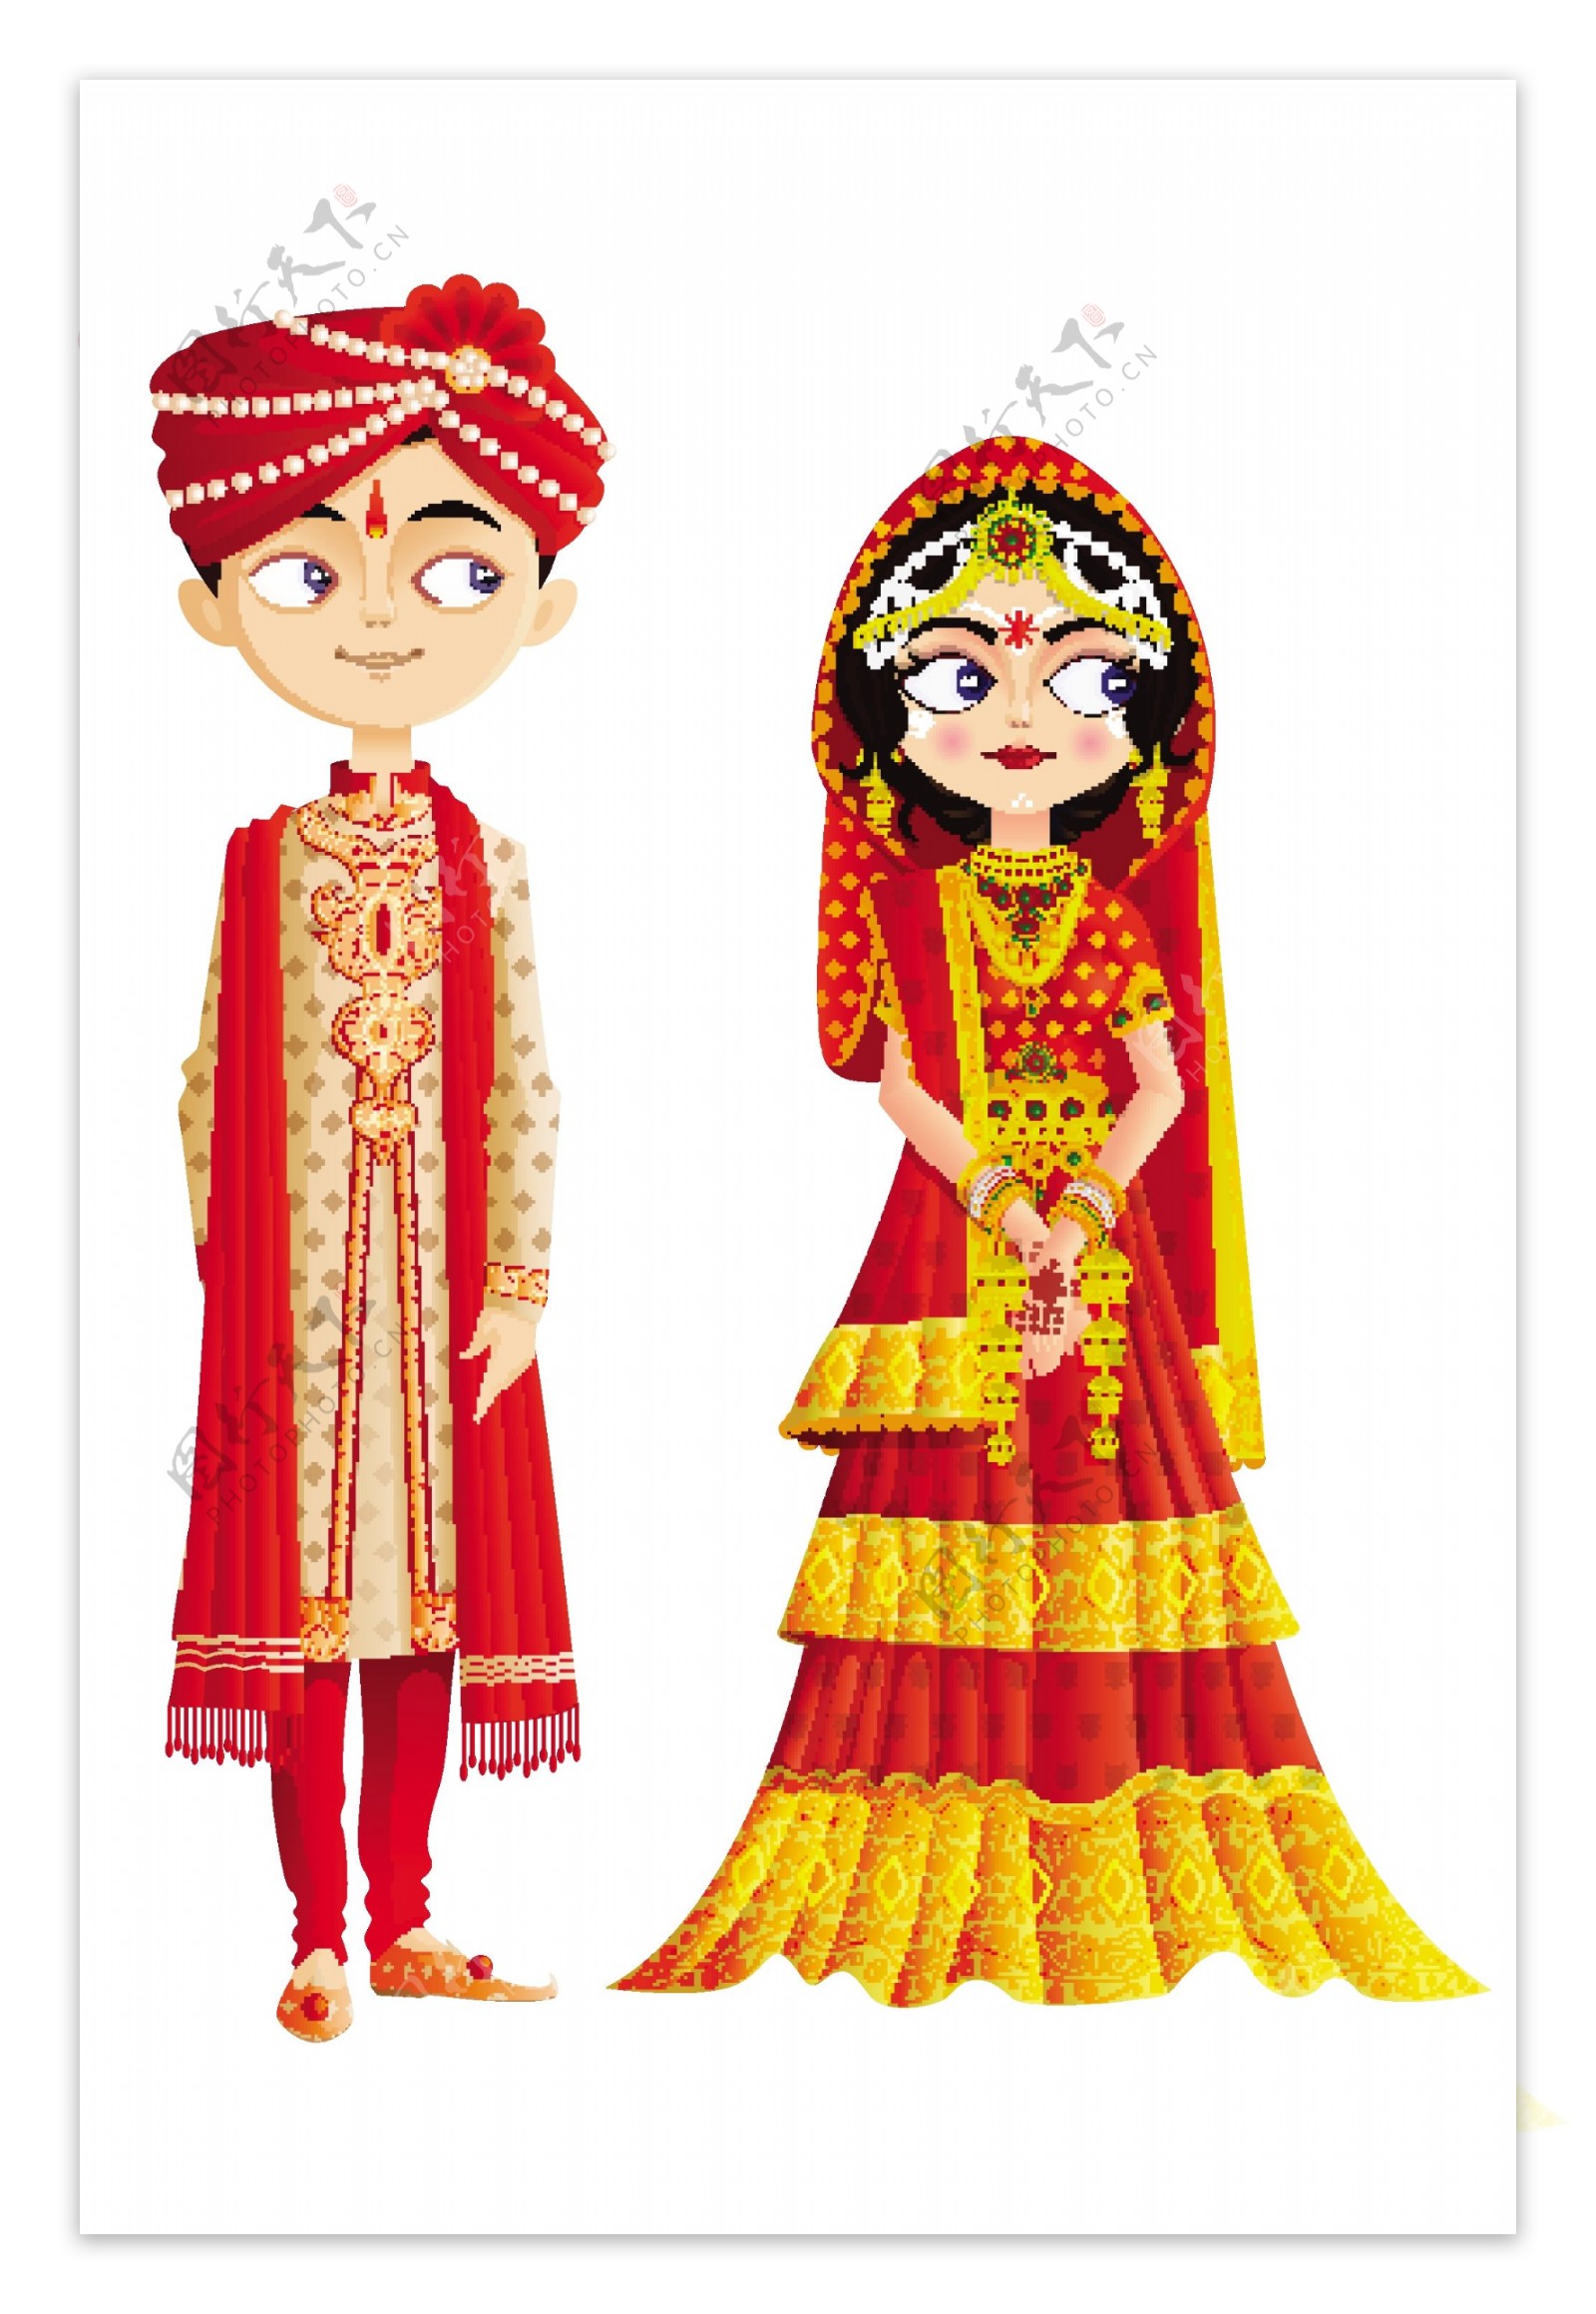 印度传统婚礼服饰